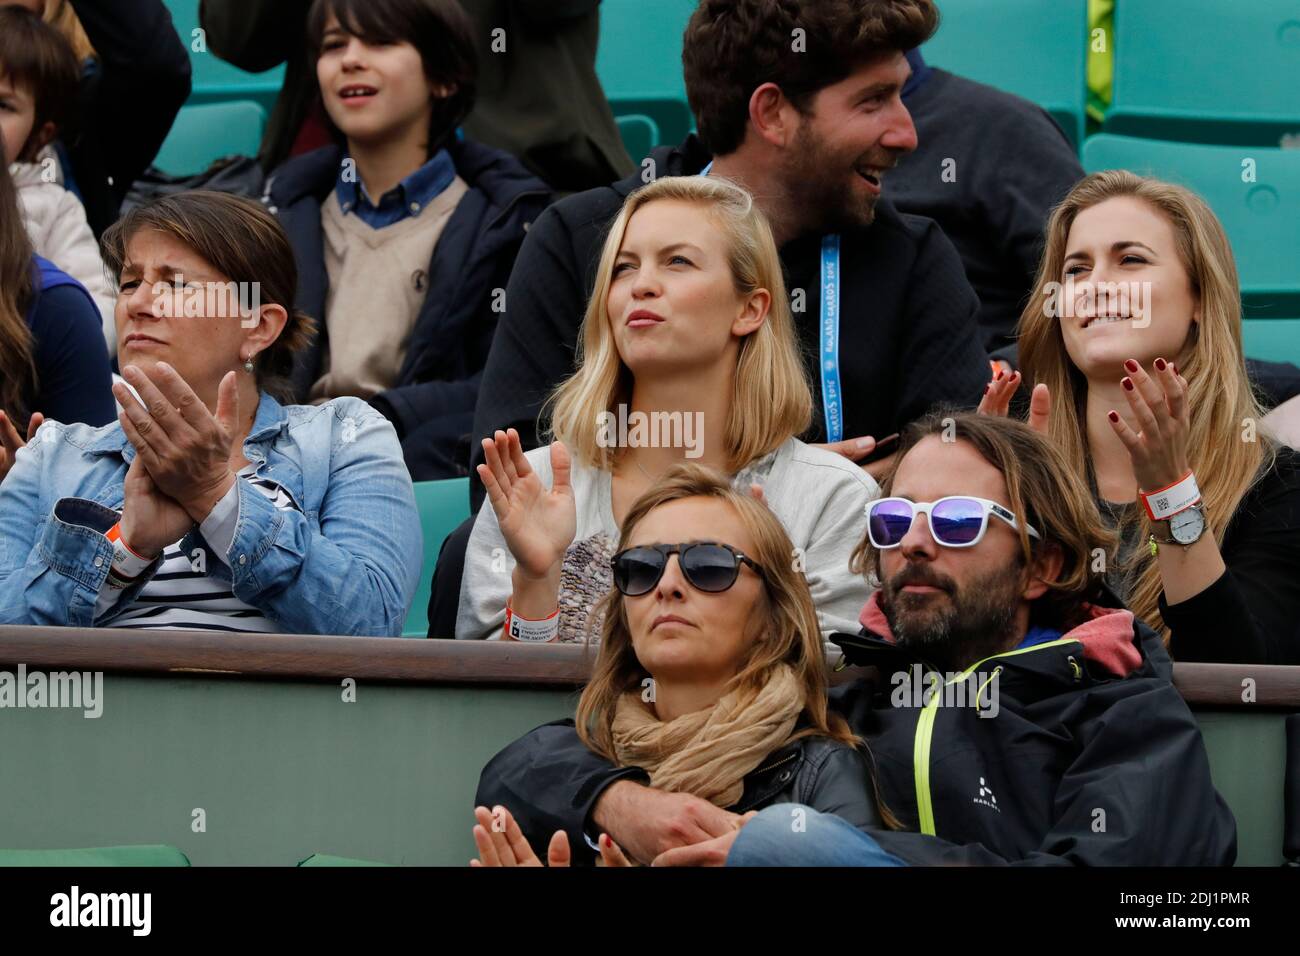 Alba Carrillo beobachtet ihren Mann Feliciano Lopez beim Doppel-Finale der  Herren bei den BNP Paribas Tennis French Open 2016 im Roland-Garros-Stadion,  Paris, Frankreich am 4. Juni 2016. Foto von Henri Szwarc/ABACAPRESS.COM  Stockfotografie -